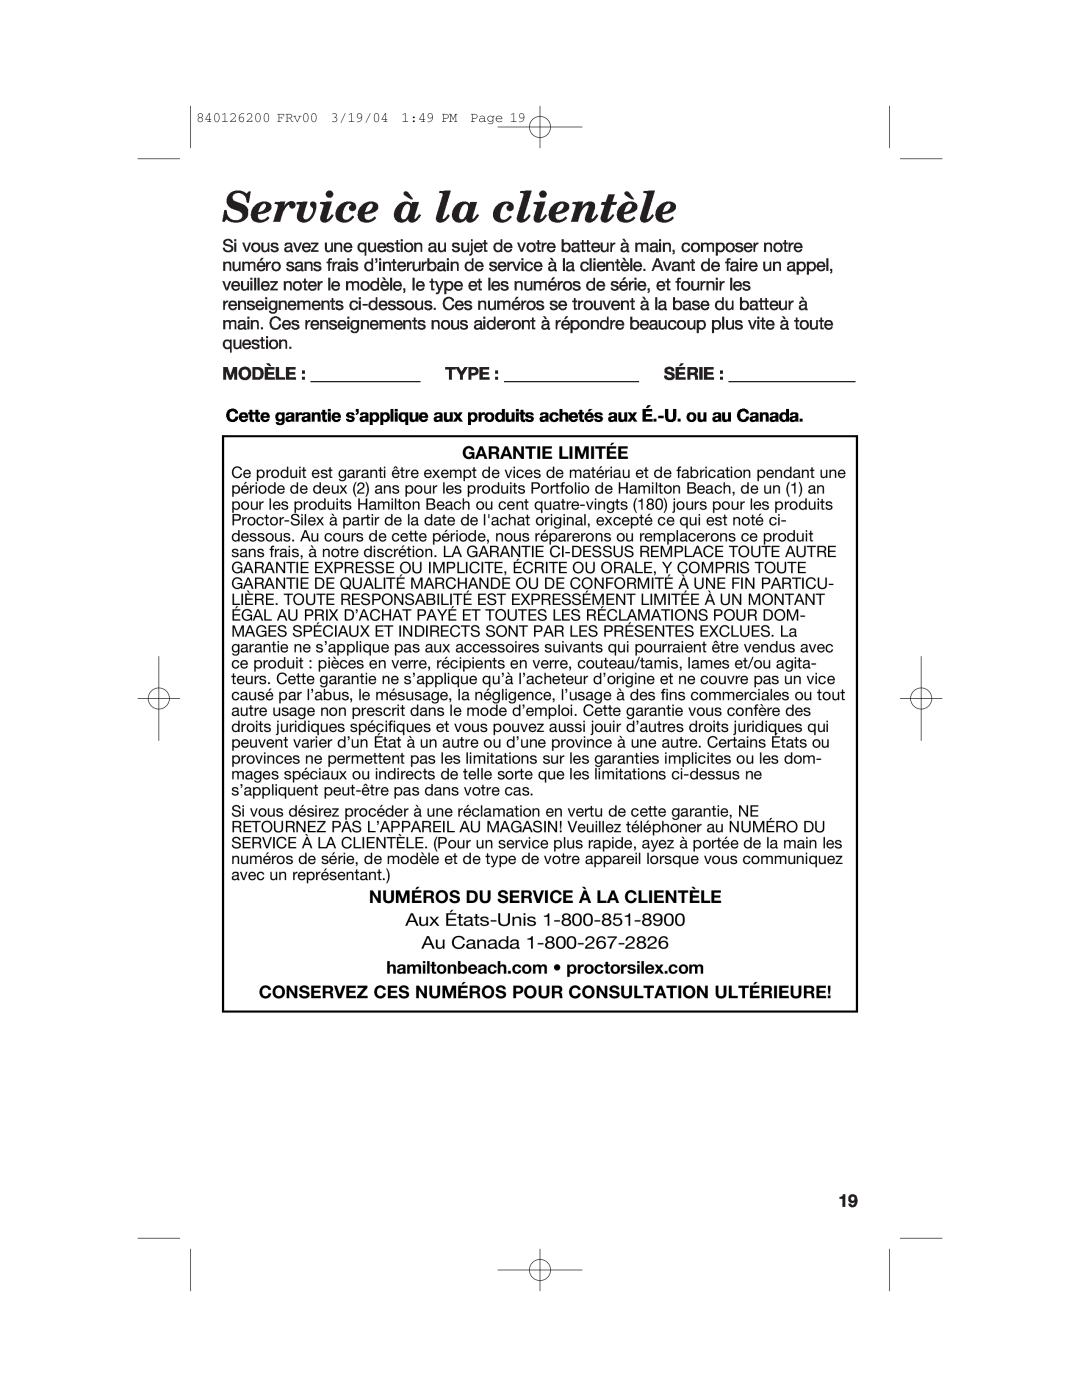 Hamilton Beach 62680C manual Service à la clientèle, Garantie Limitée, Numéros Du Service À La Clientèle 